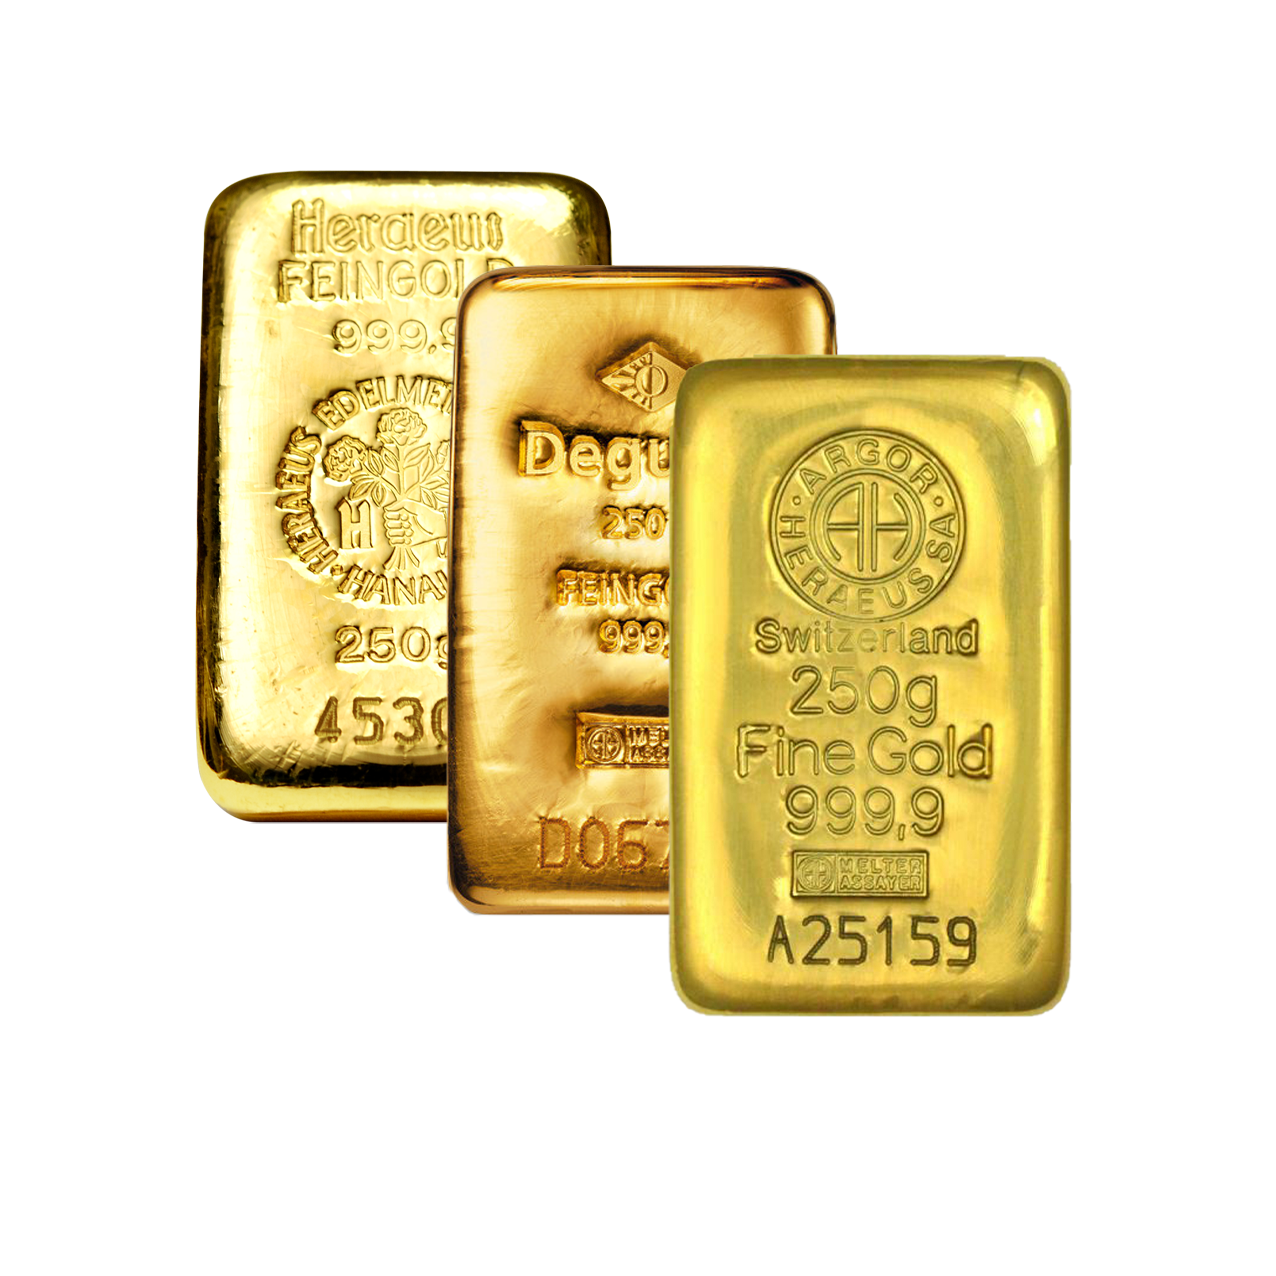 Gold Bar - 250 g fine gold .9999 - various brands